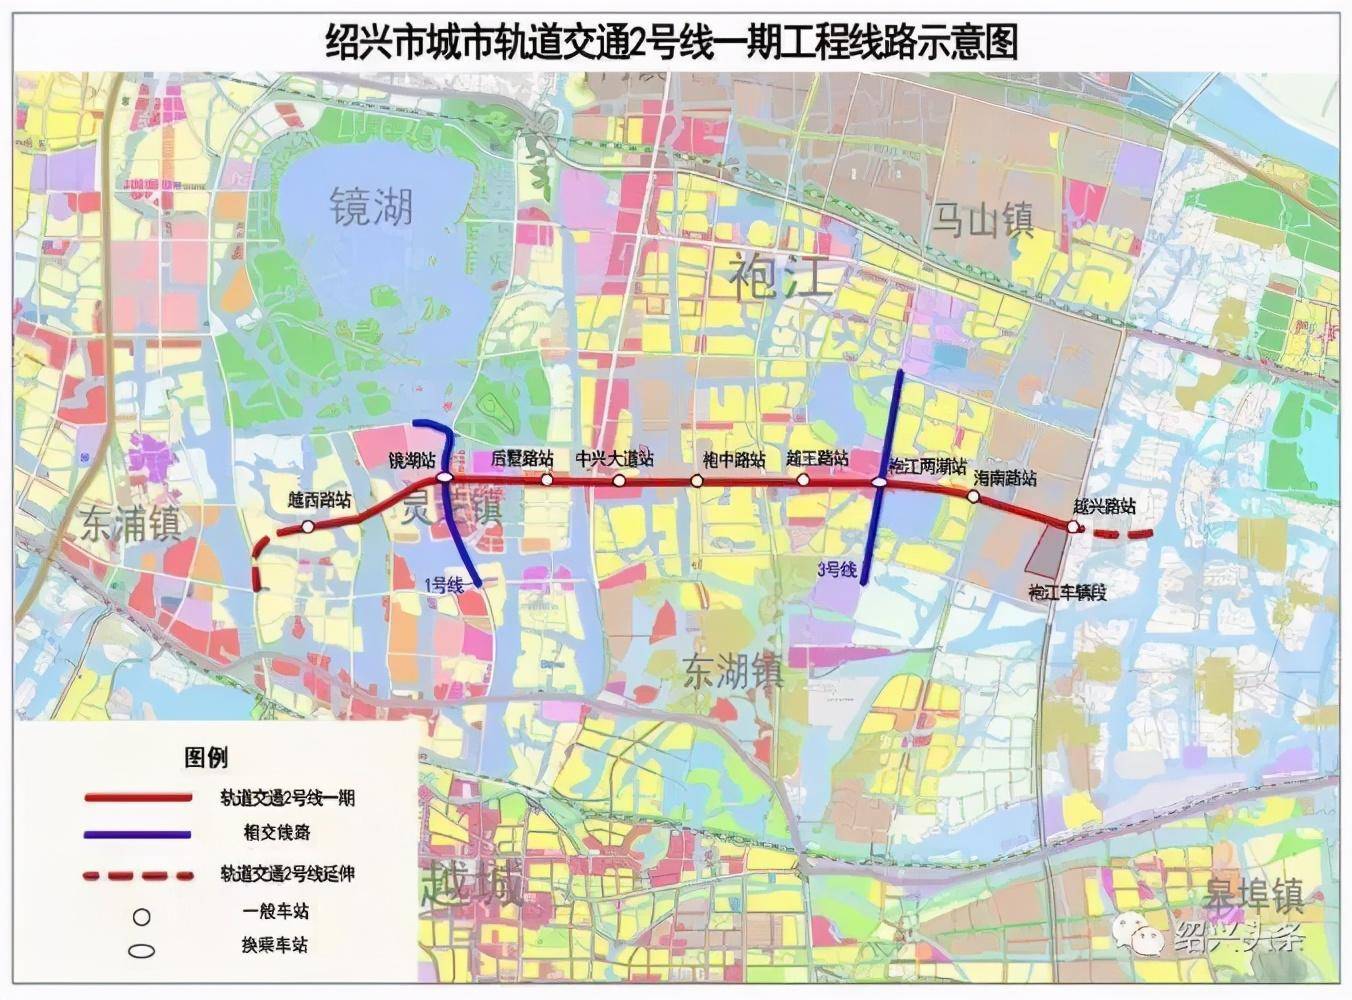 绍兴市城市轨道交通线网规划20212035年顺利通过技术审查和专家评审